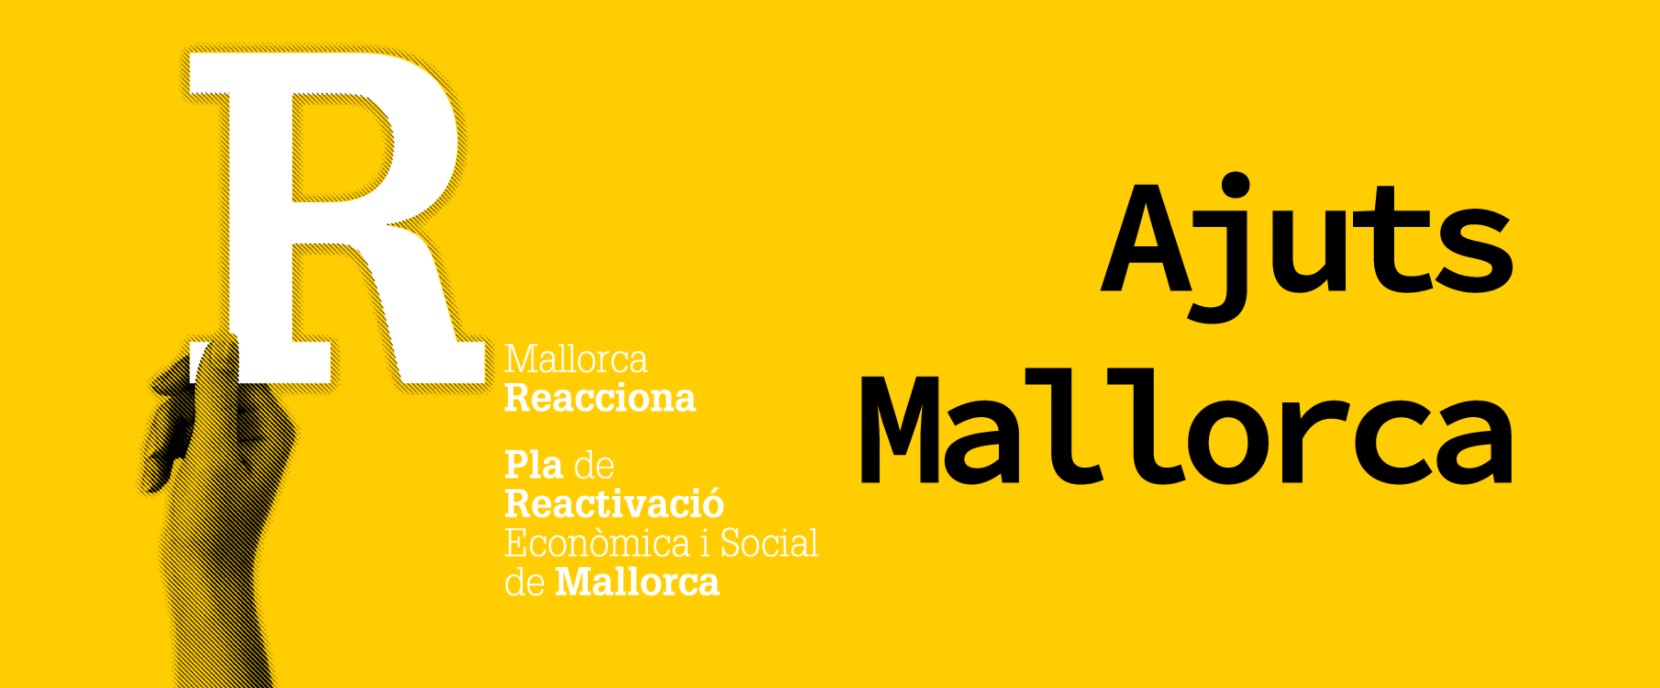 Logo de los Ajuts Mallorca.